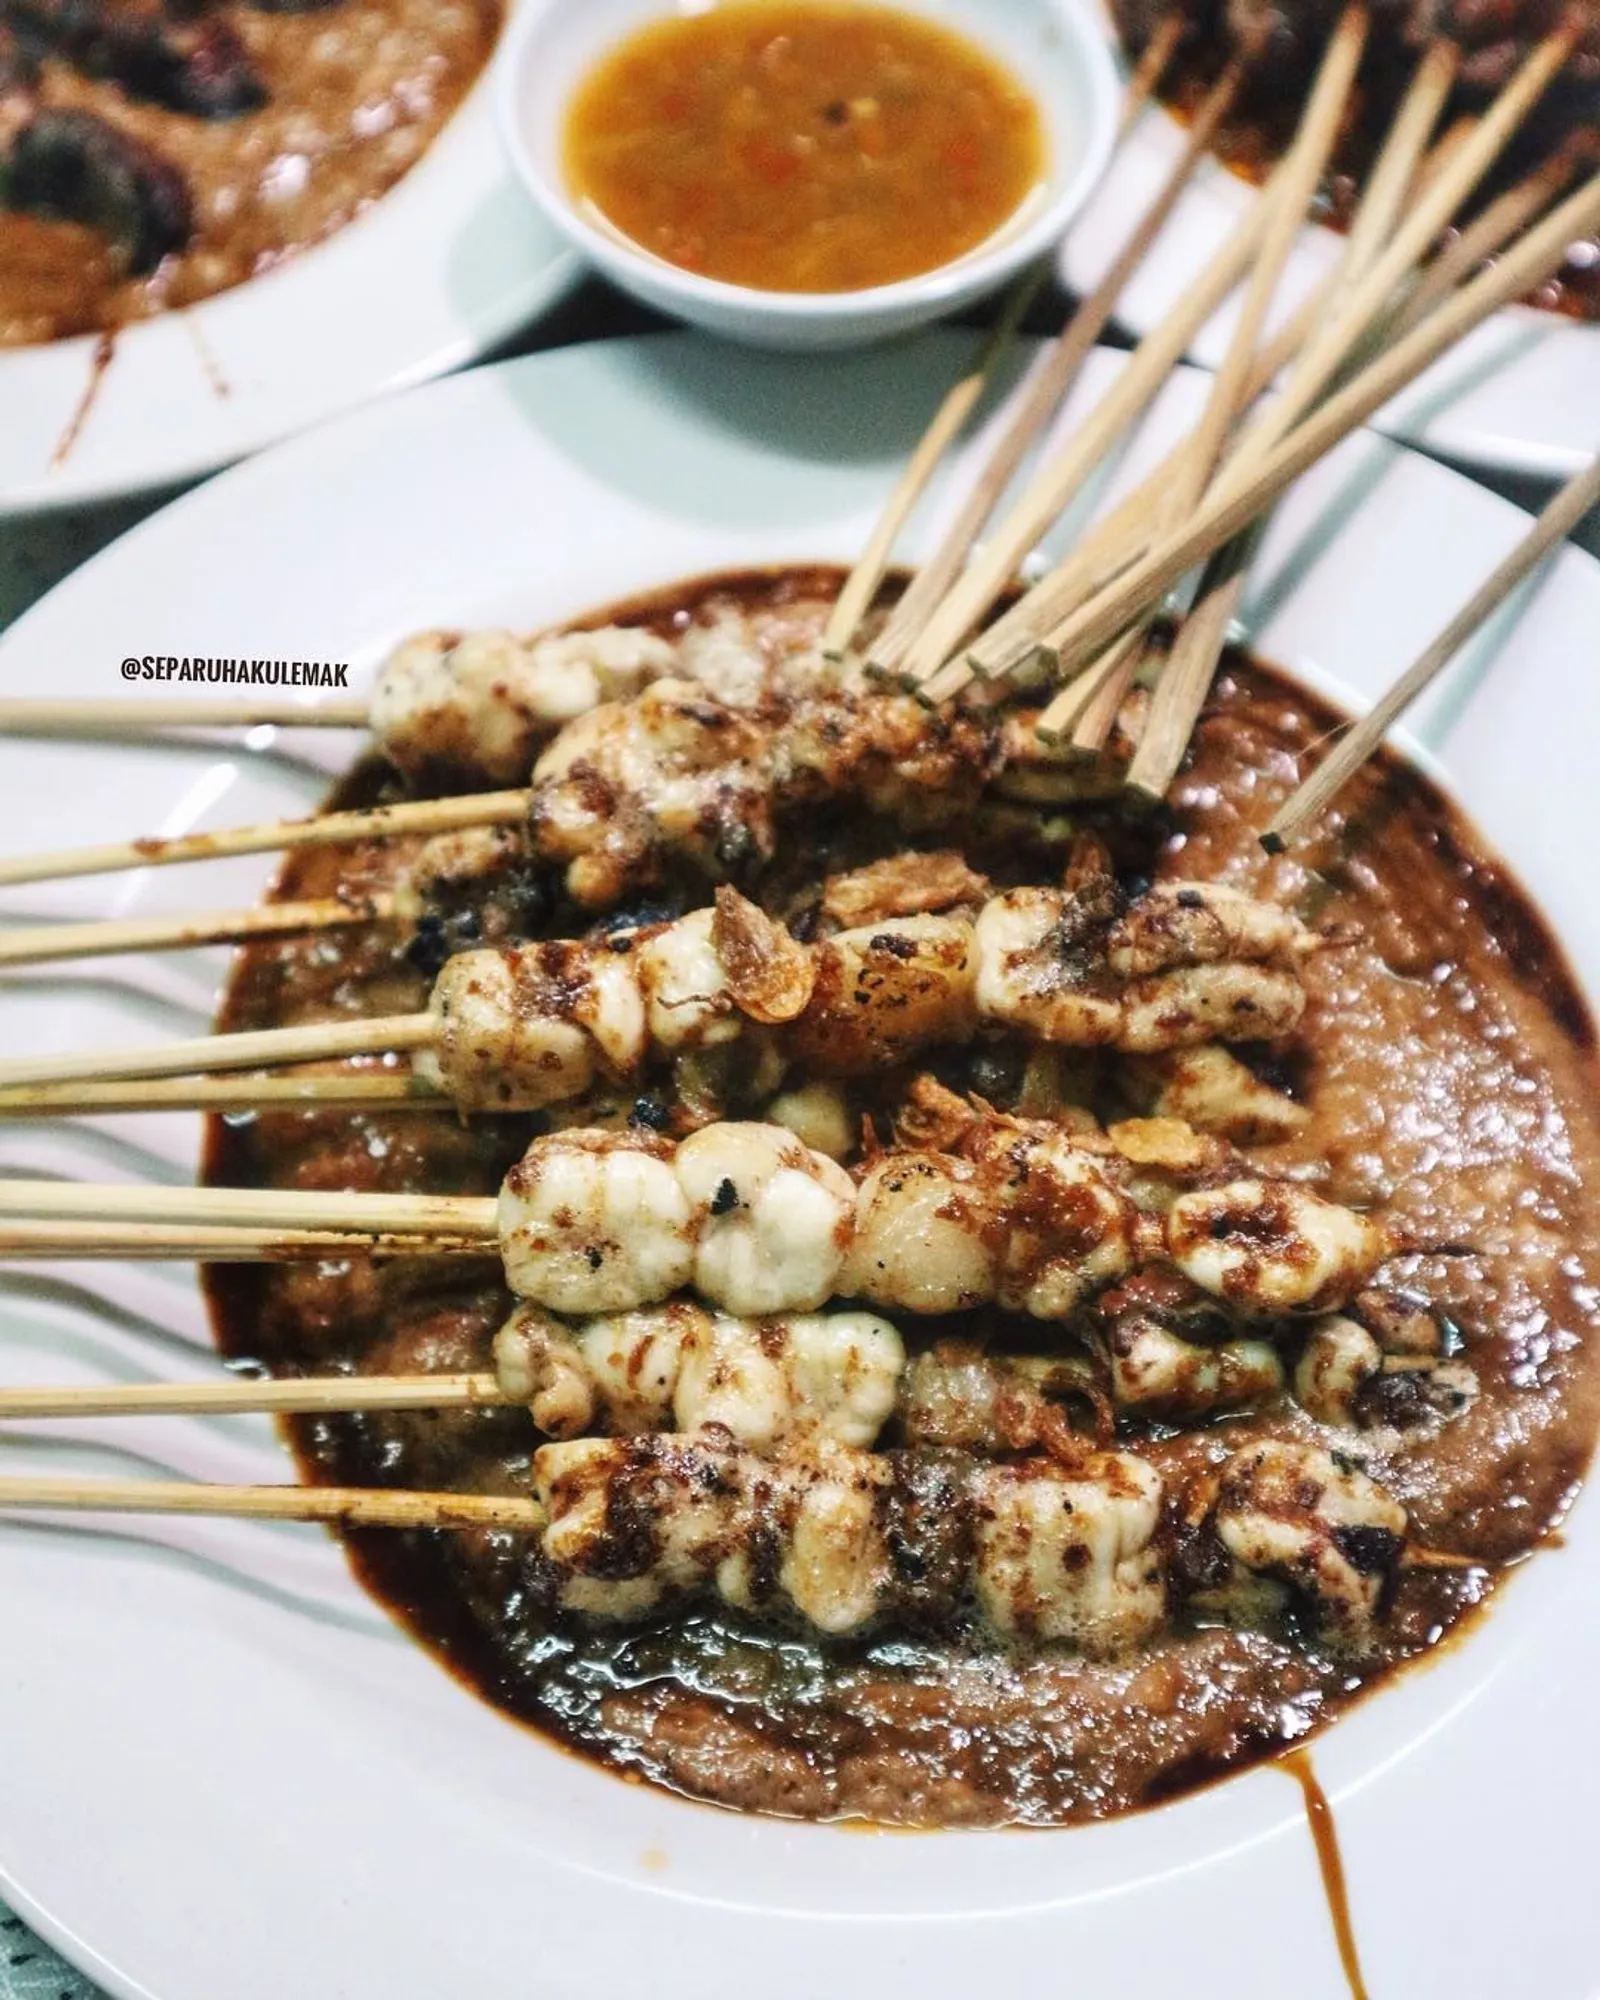 Wisata Kuliner Kaki Lima saat Malam Hari di Bogor Biar Romantis